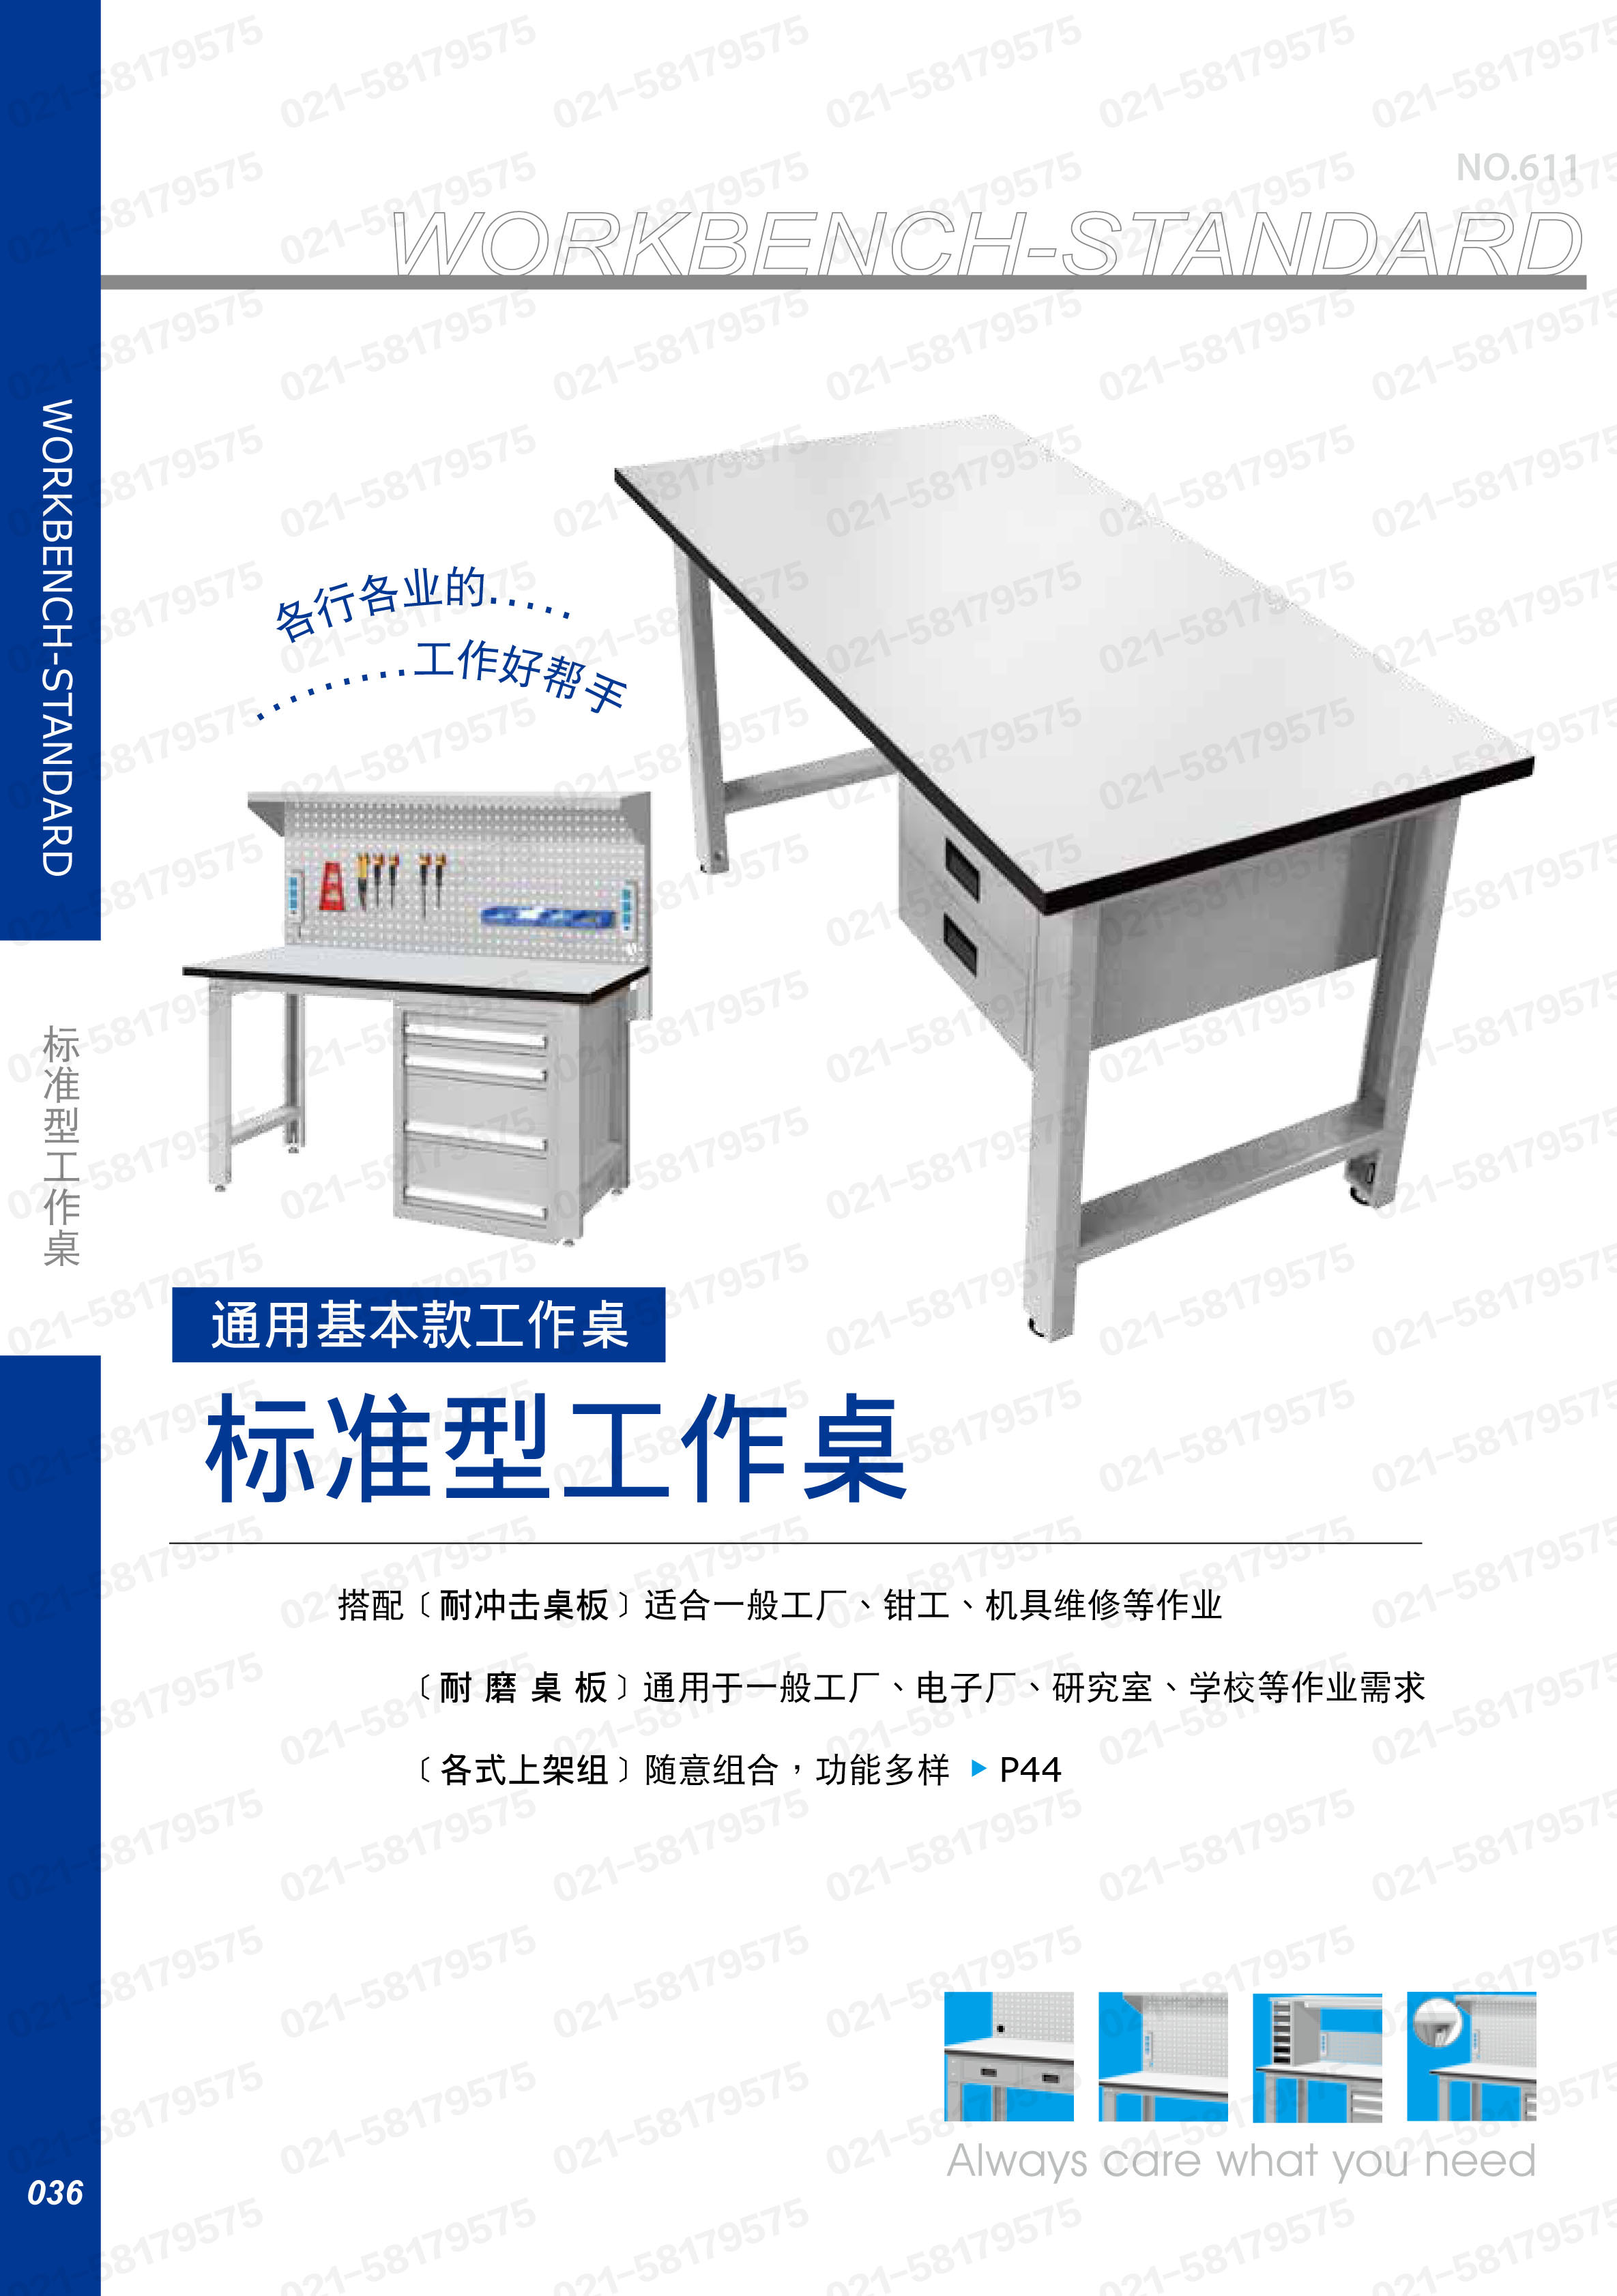 轻型工作桌1500×750×800mm 耐磨桌板 带四抽边柜,WBS-57041F,5D2948